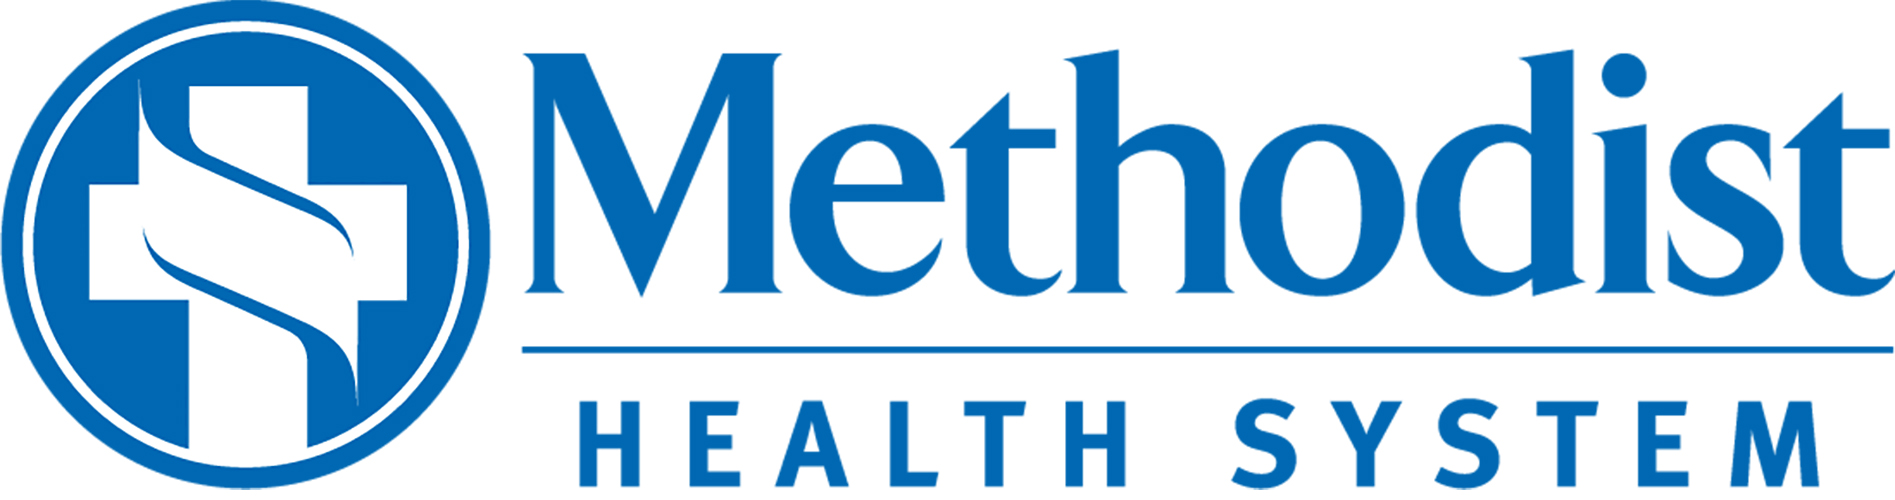 610 Methodist Southlake Medical Center logo